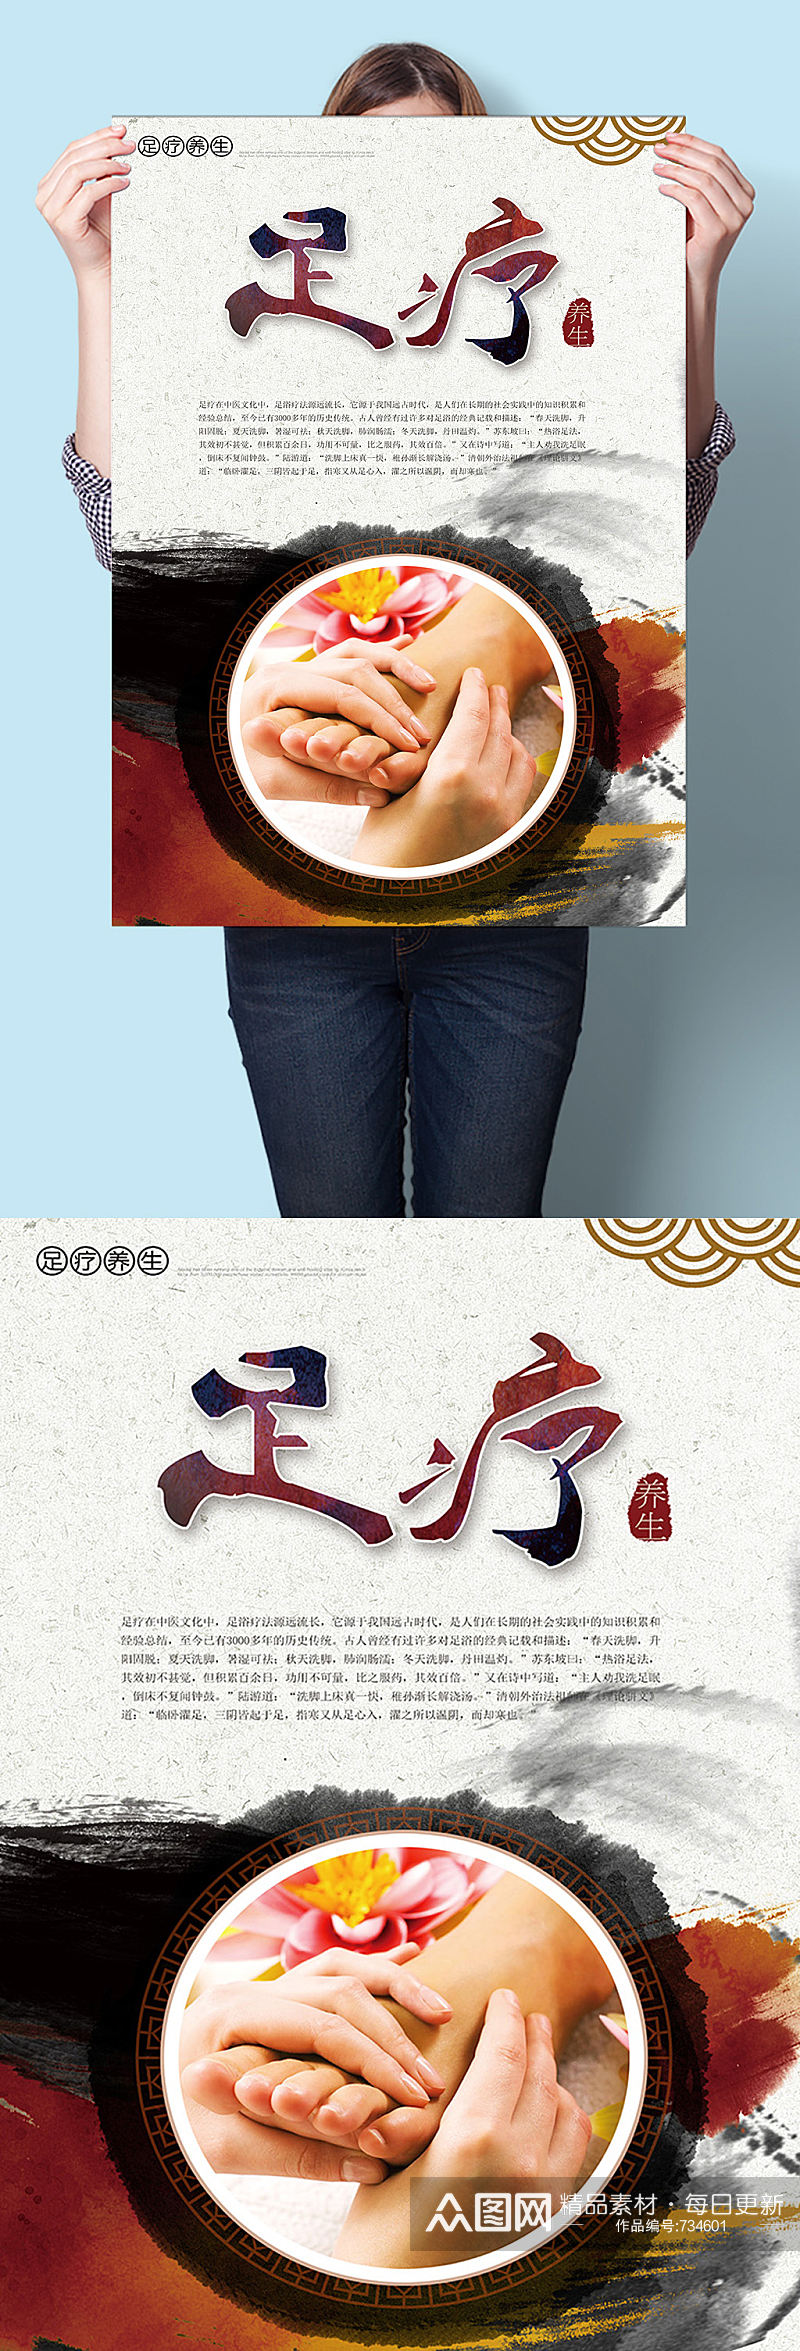 中医足疗足部保健广告海报素材